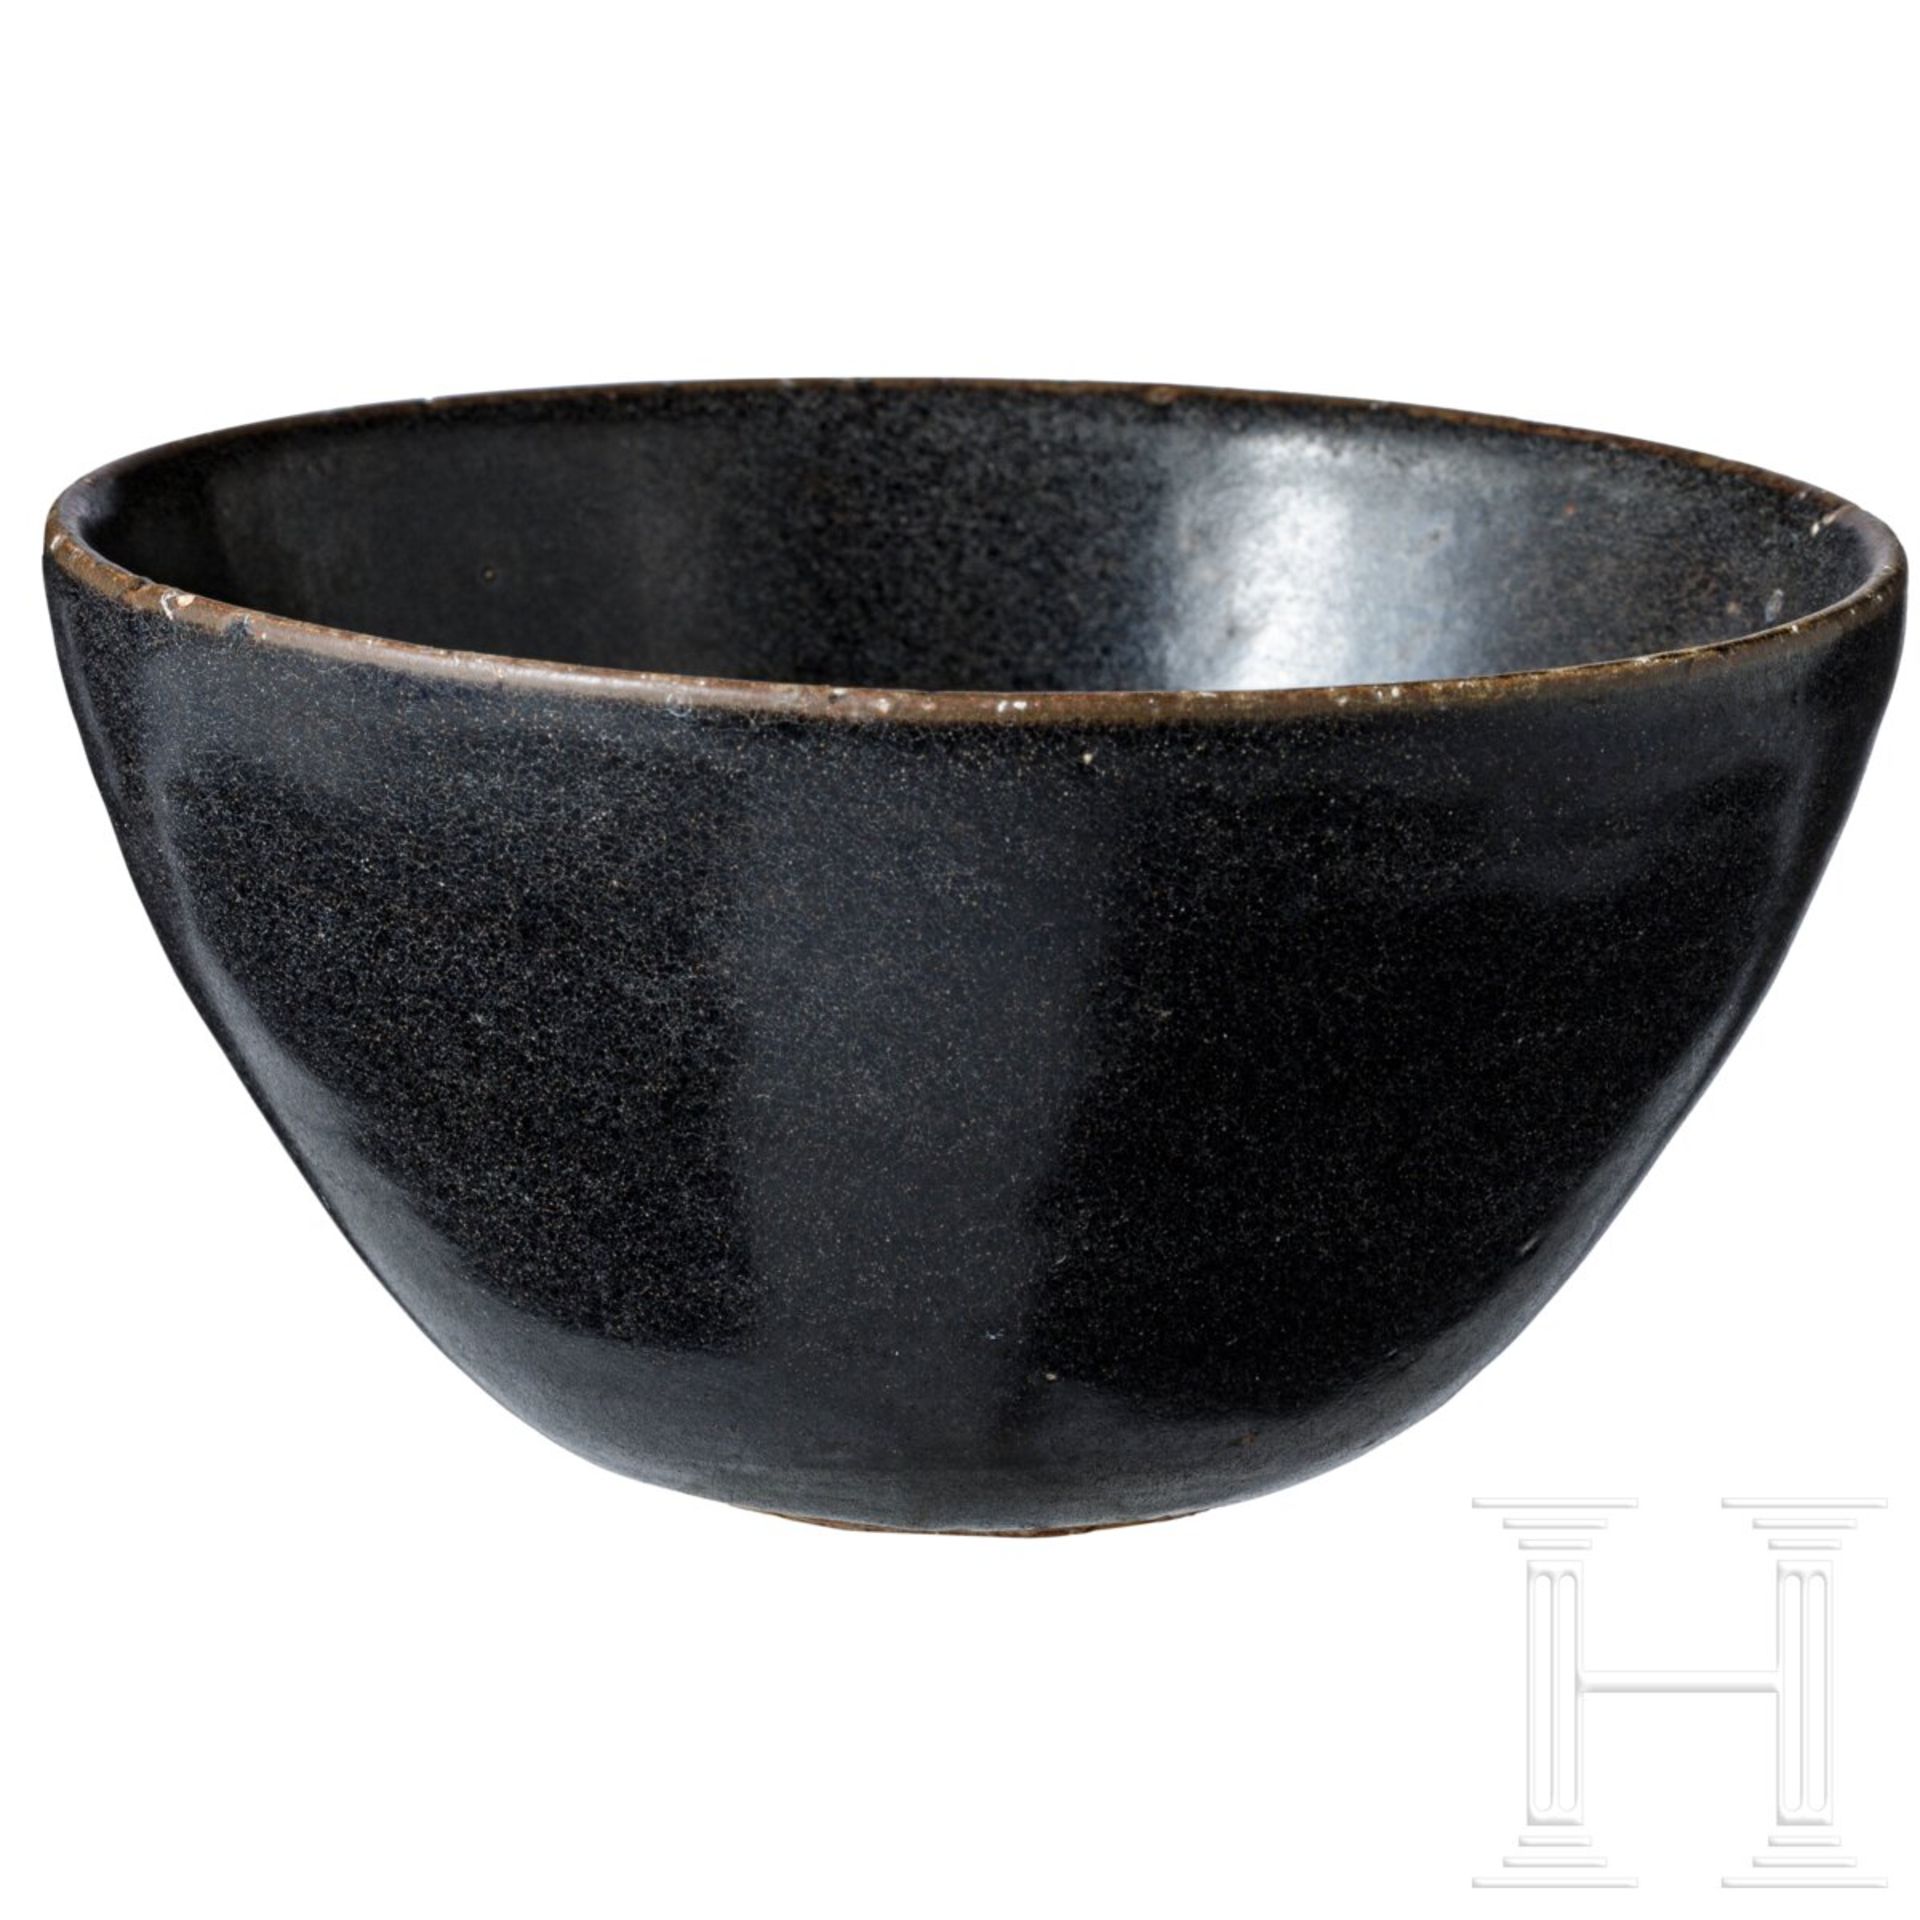 Jizhou-Teeschale, schwarz glasiert, wohl südliche Song-Dynastie (12. - 13. Jhdt.) - Bild 3 aus 17